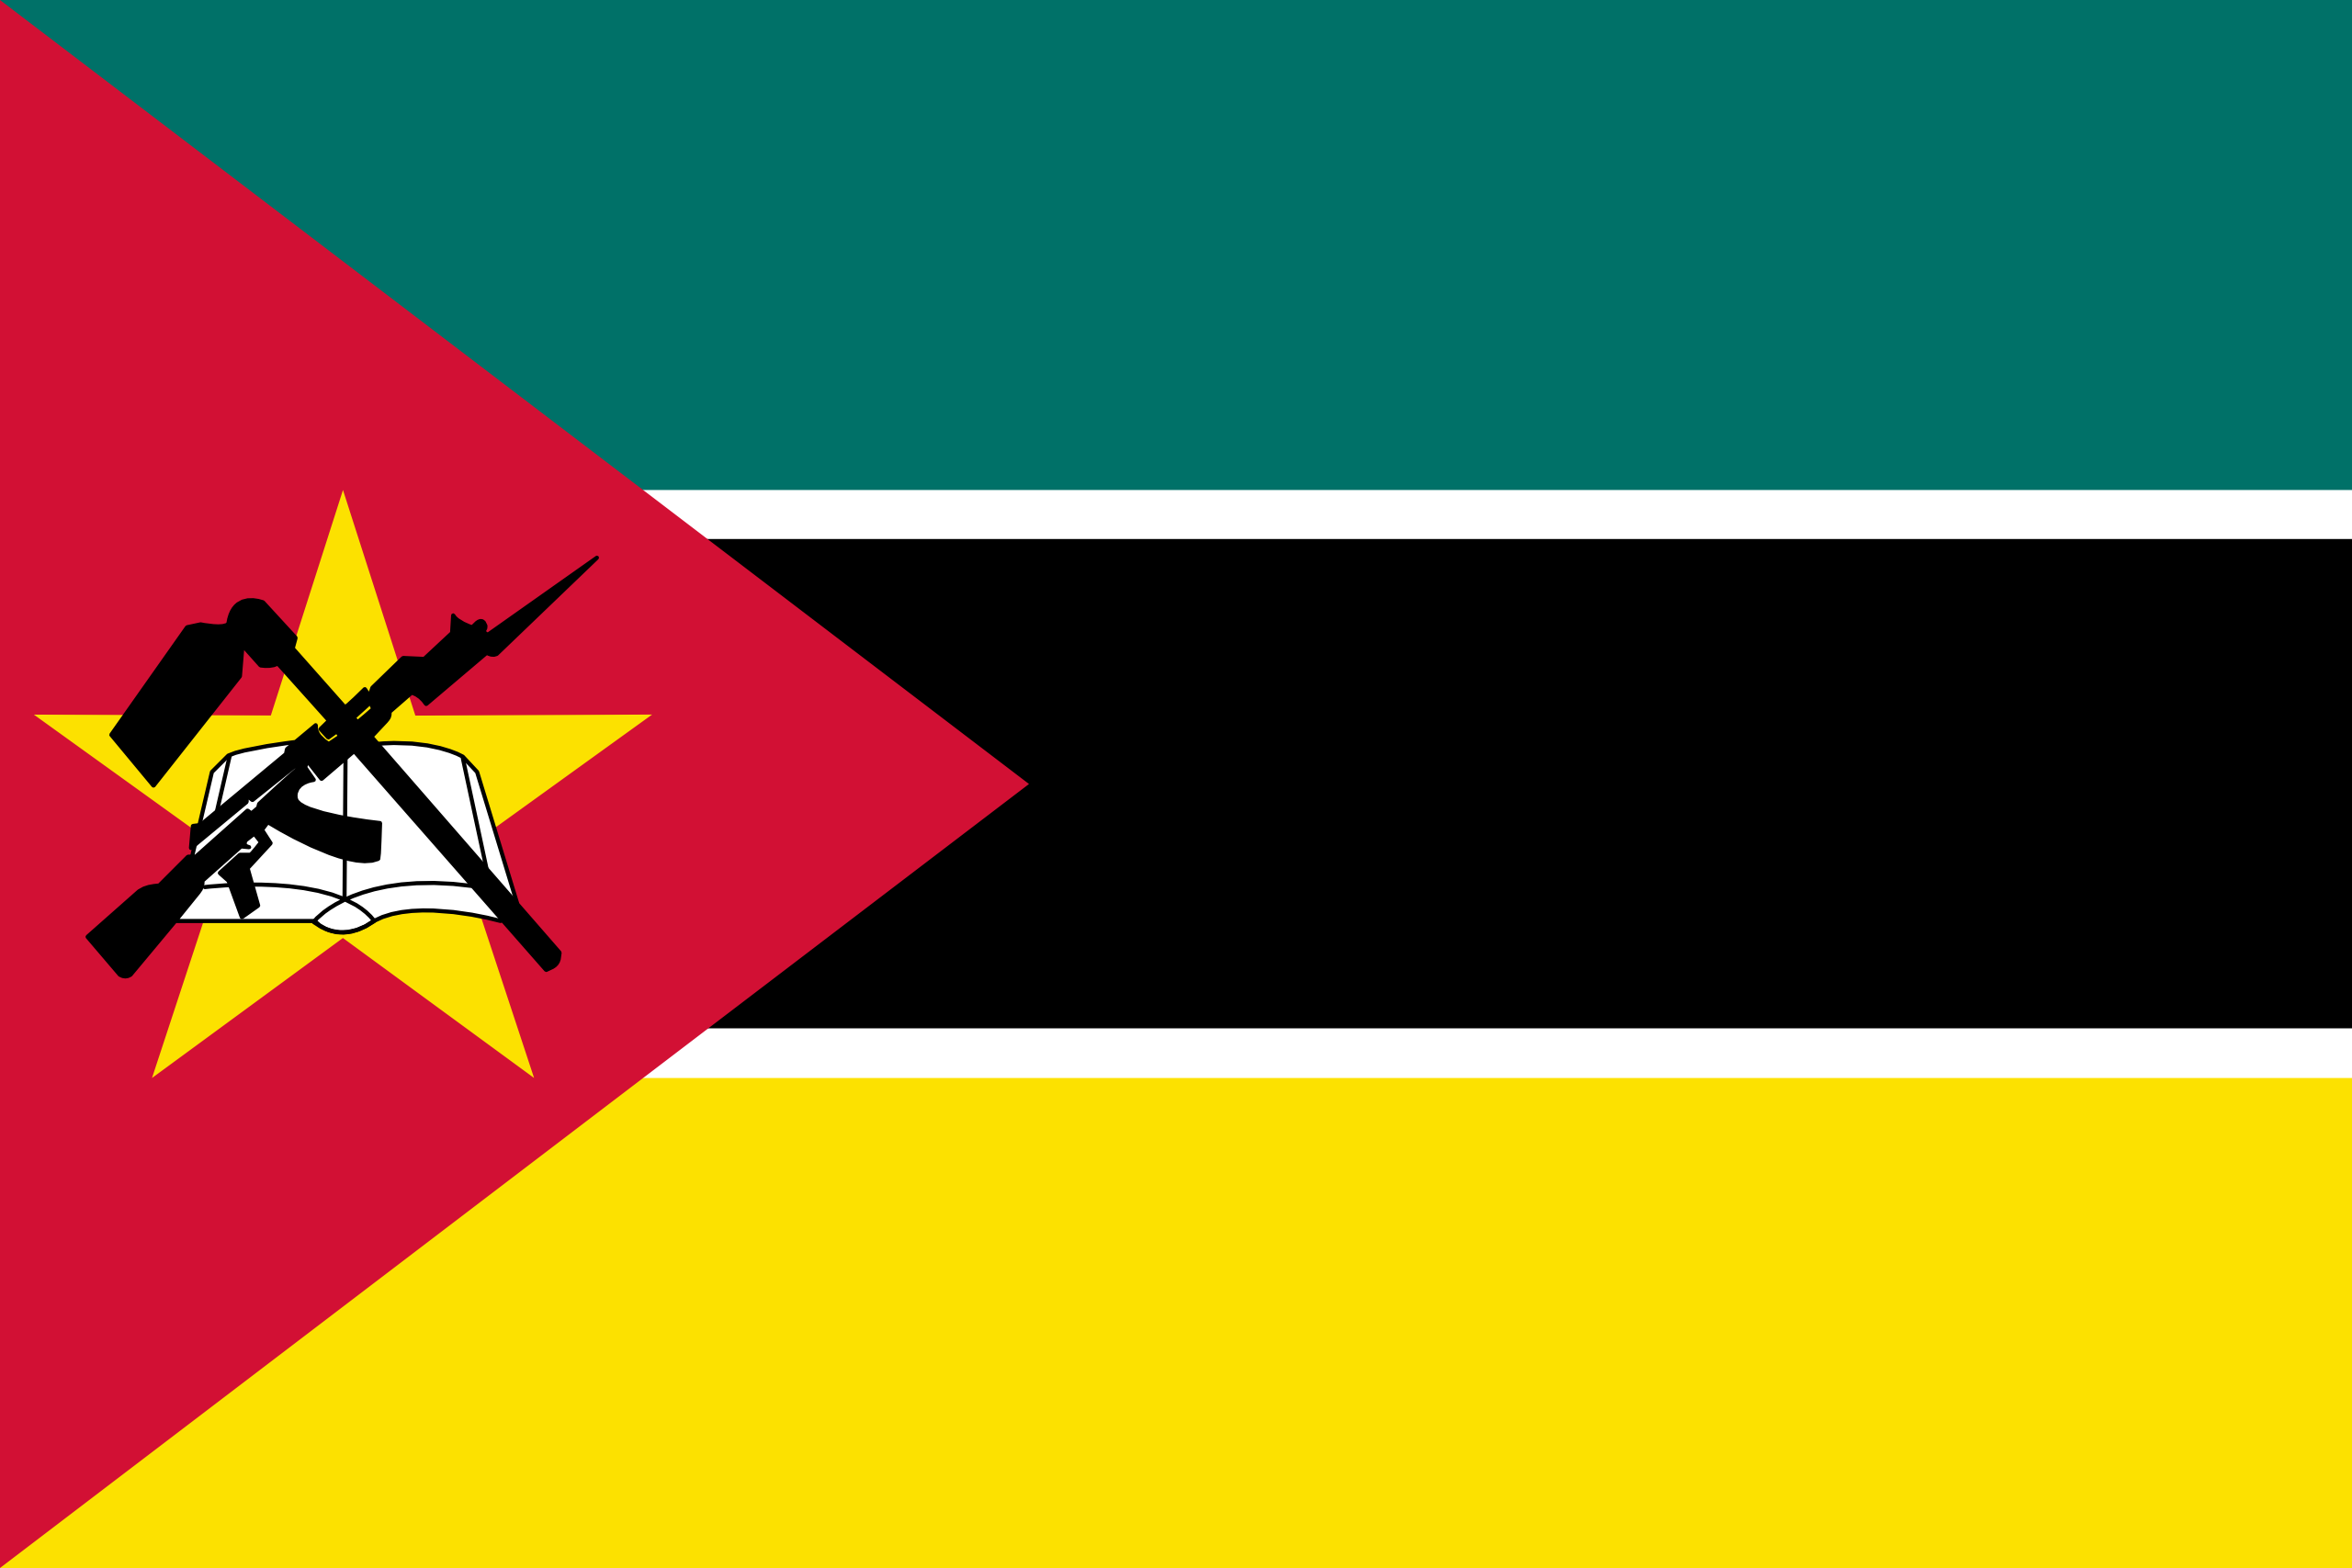 Mozambique's flag